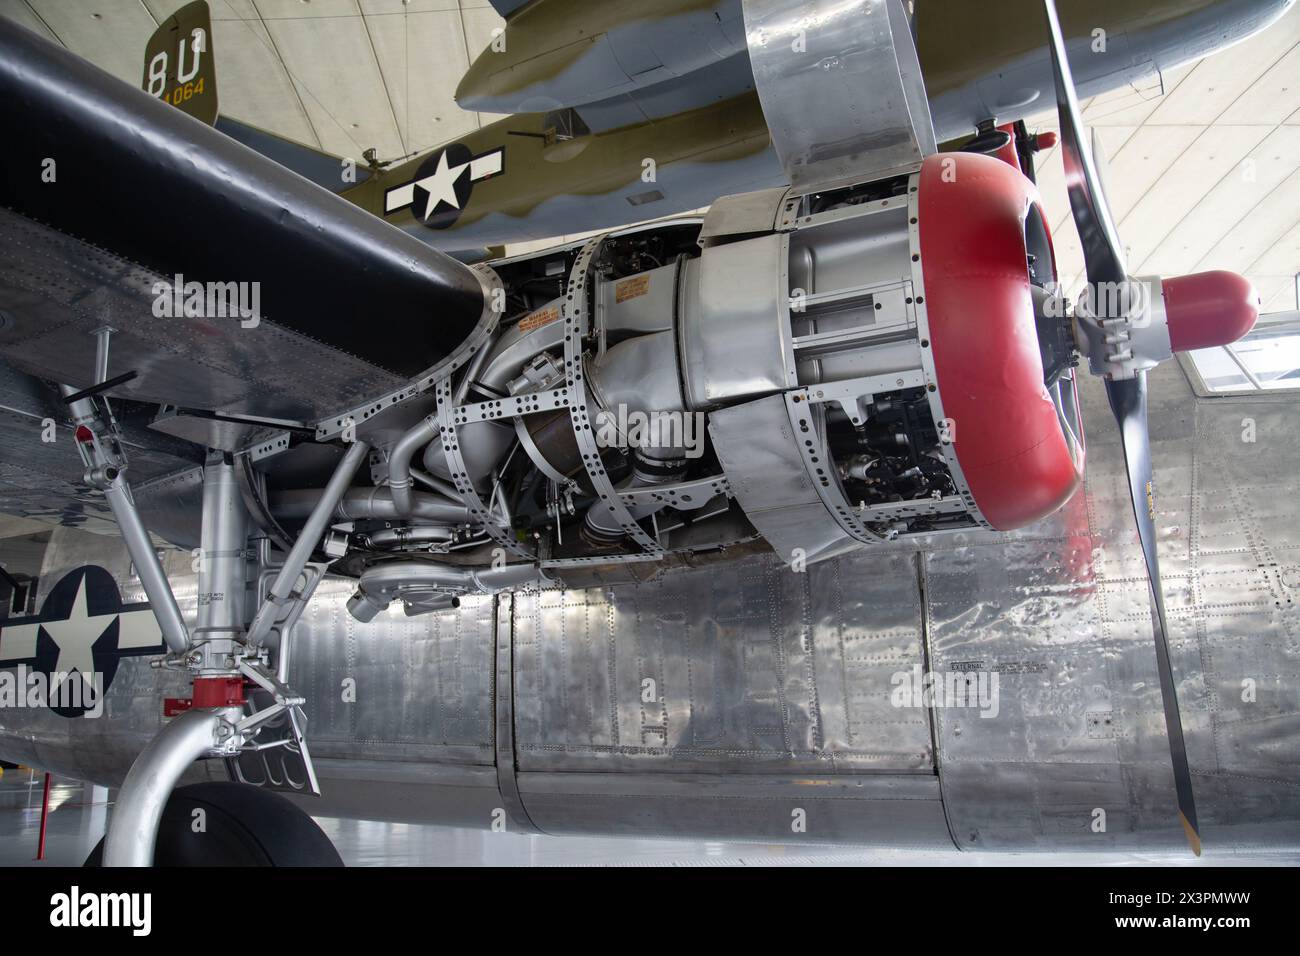 Entretien du moteur sur un Consolidated B-24M Liberator, bombardier lourd américain de la première Guerre mondiale IWM, Duxford. ROYAUME-UNI Banque D'Images